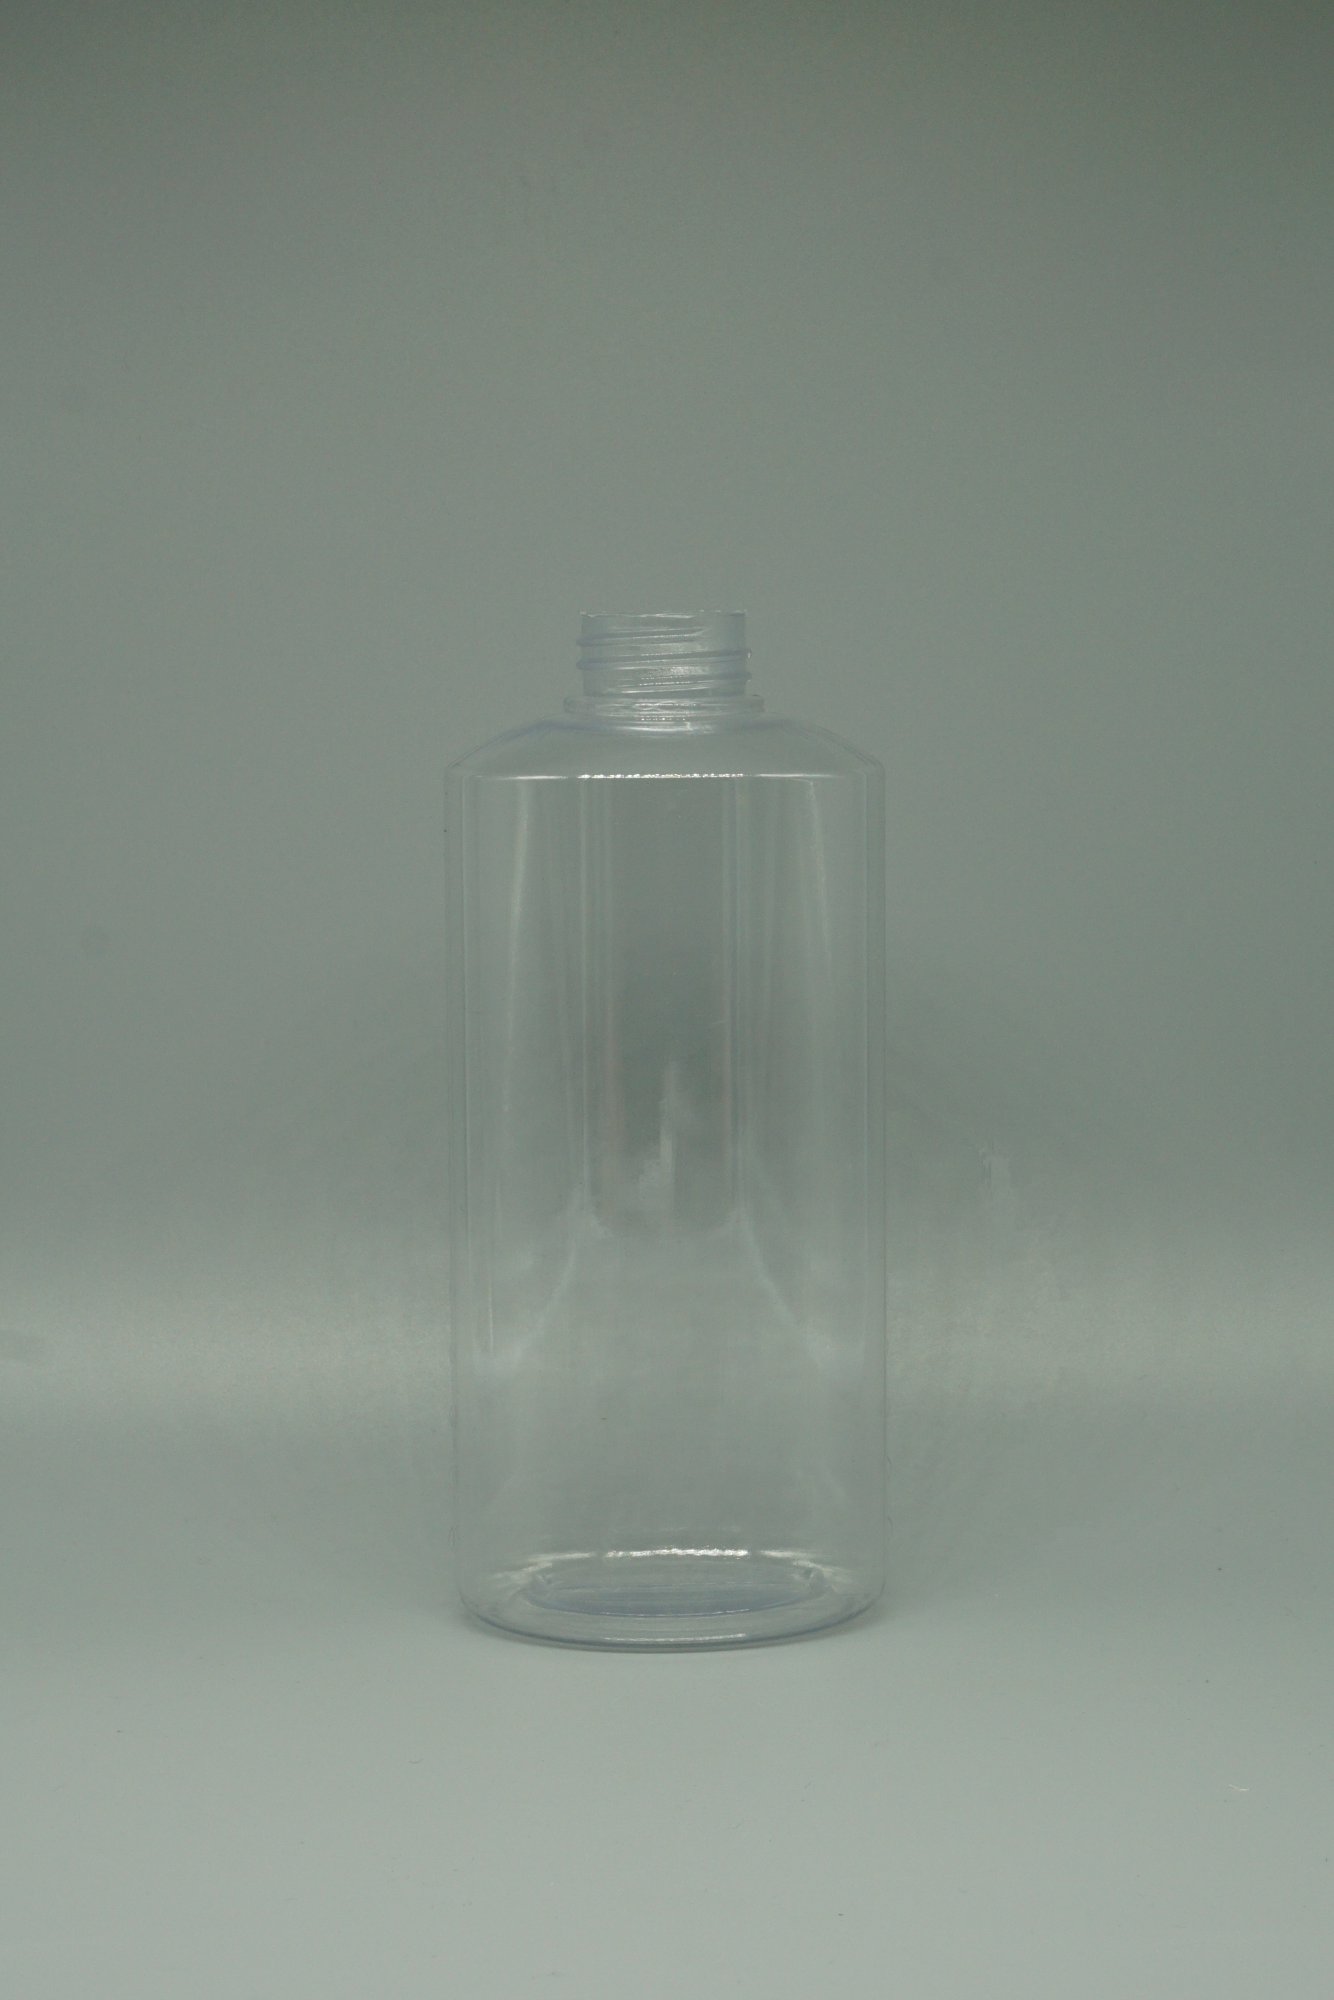 透明扁瓶(0.5公升)